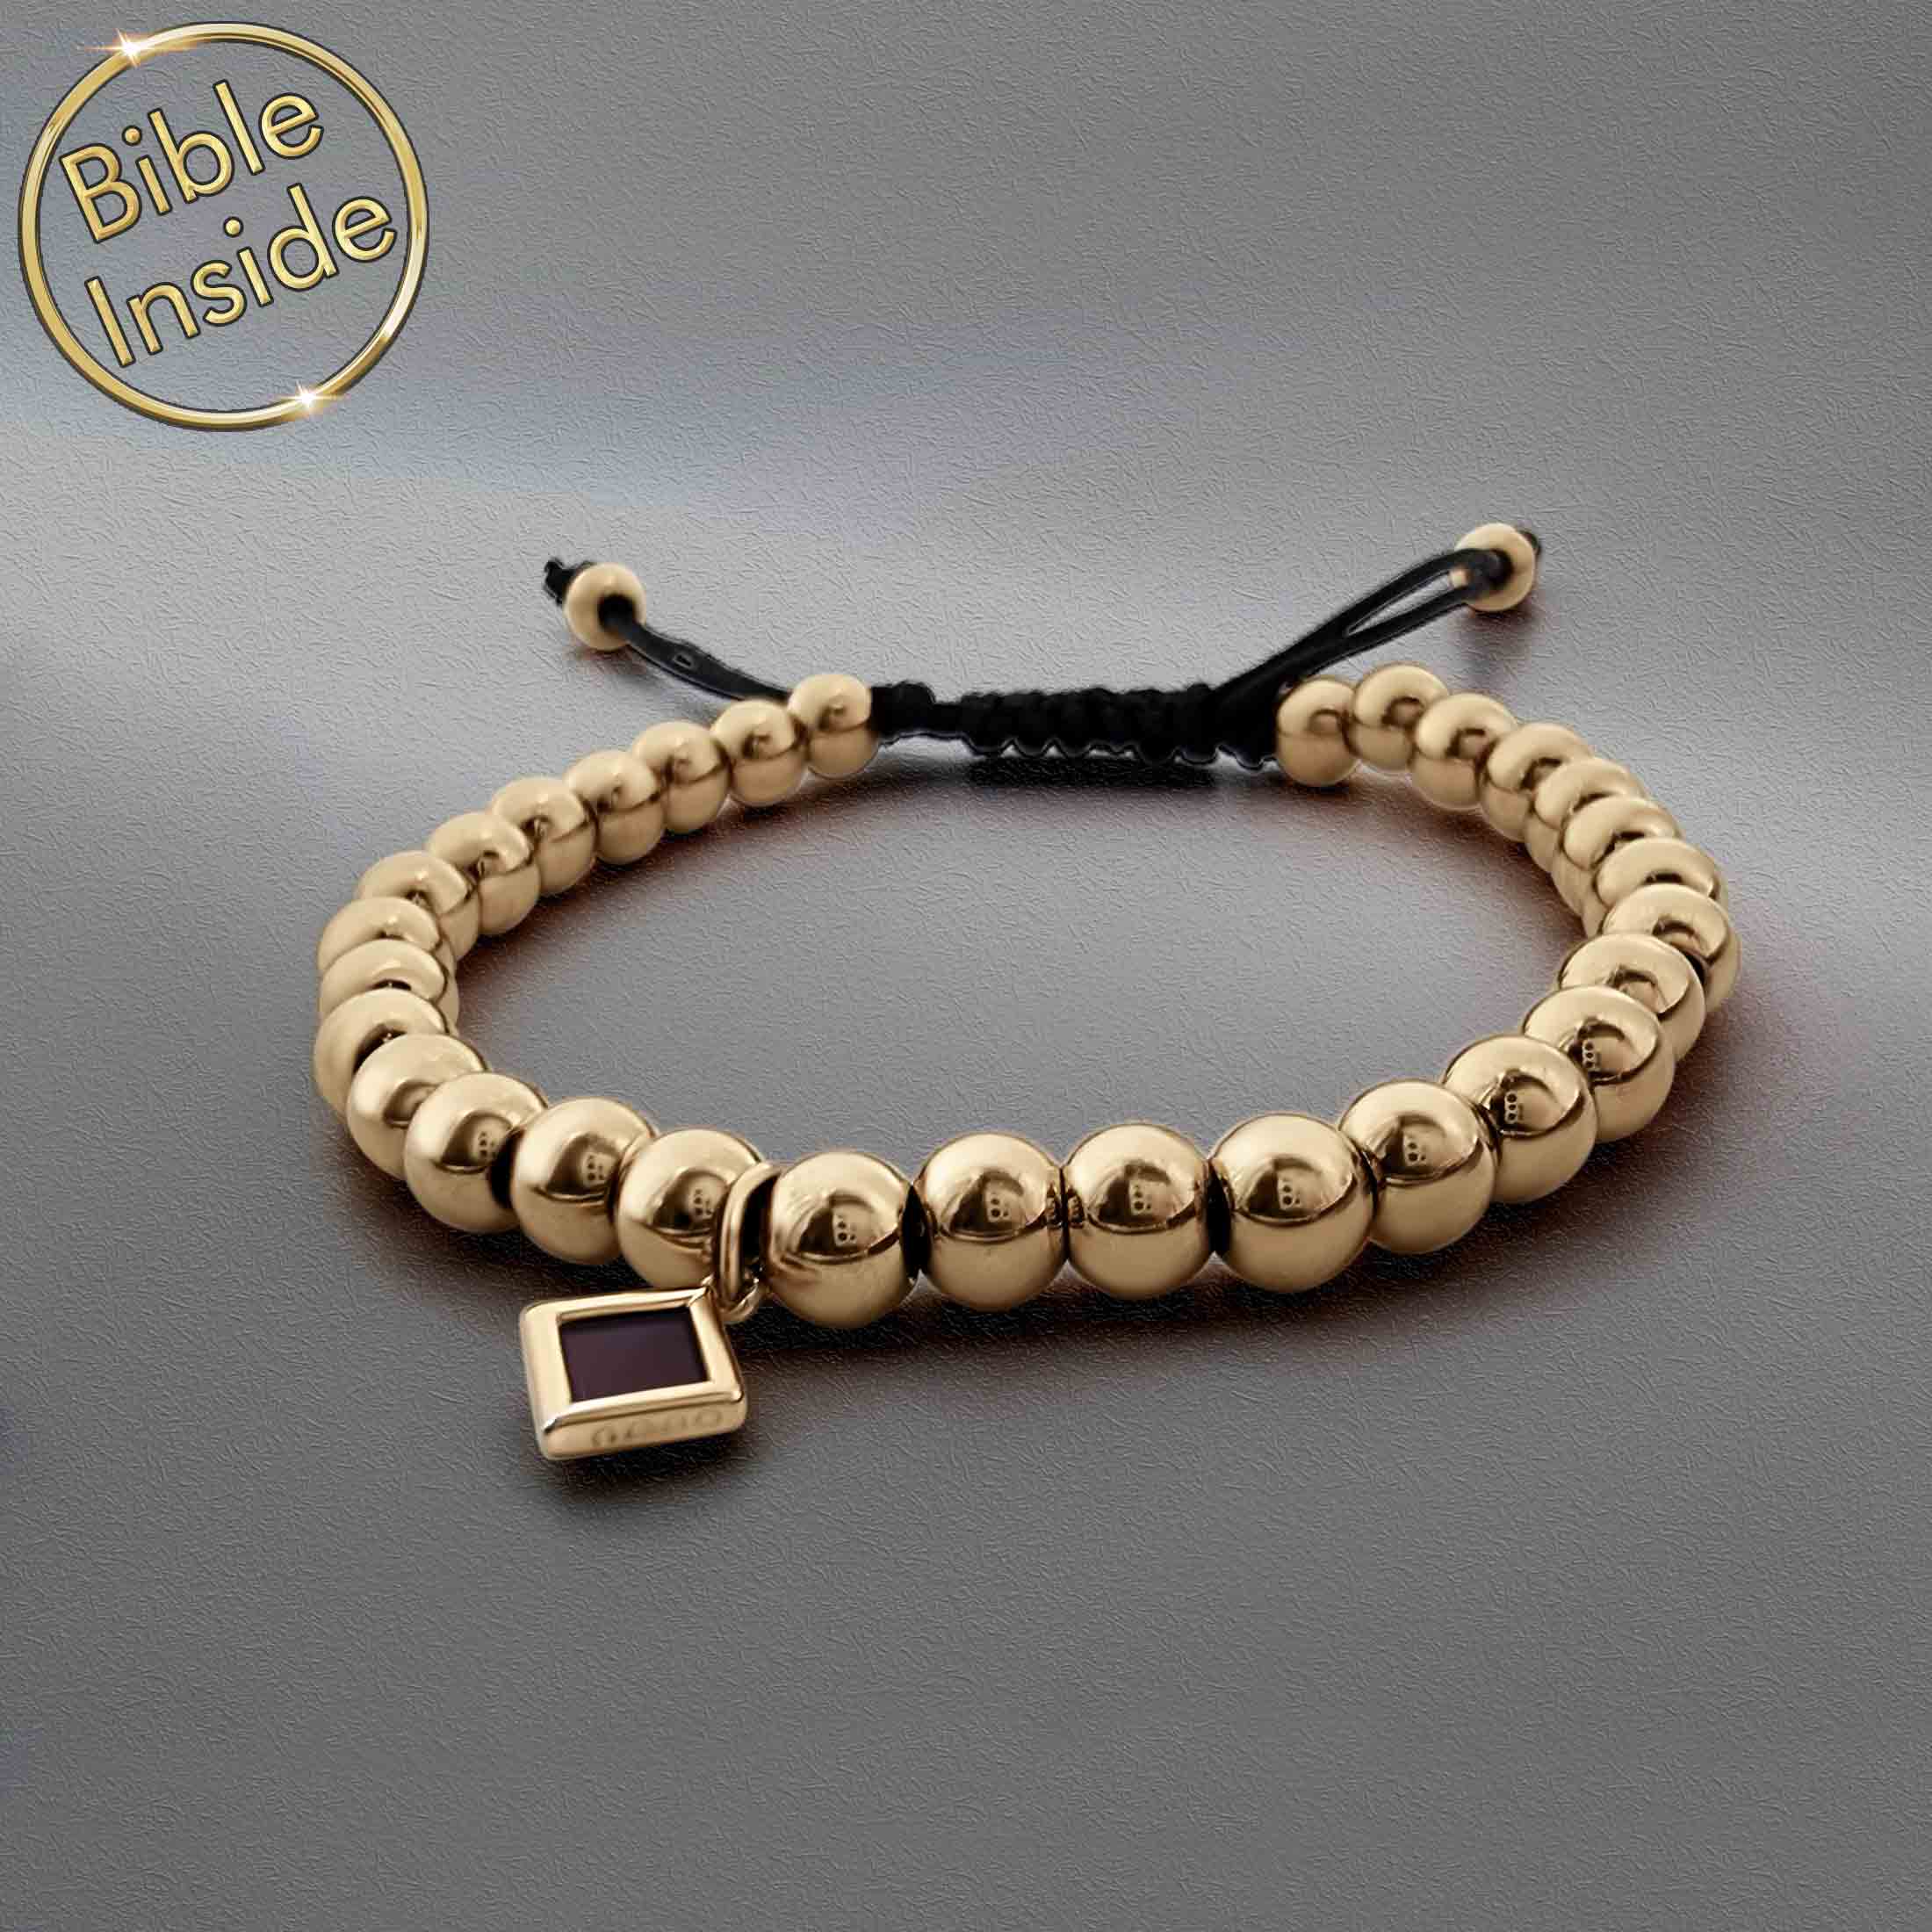 Religious Beads Bracelet With Nano Bible - Nano Jewelry